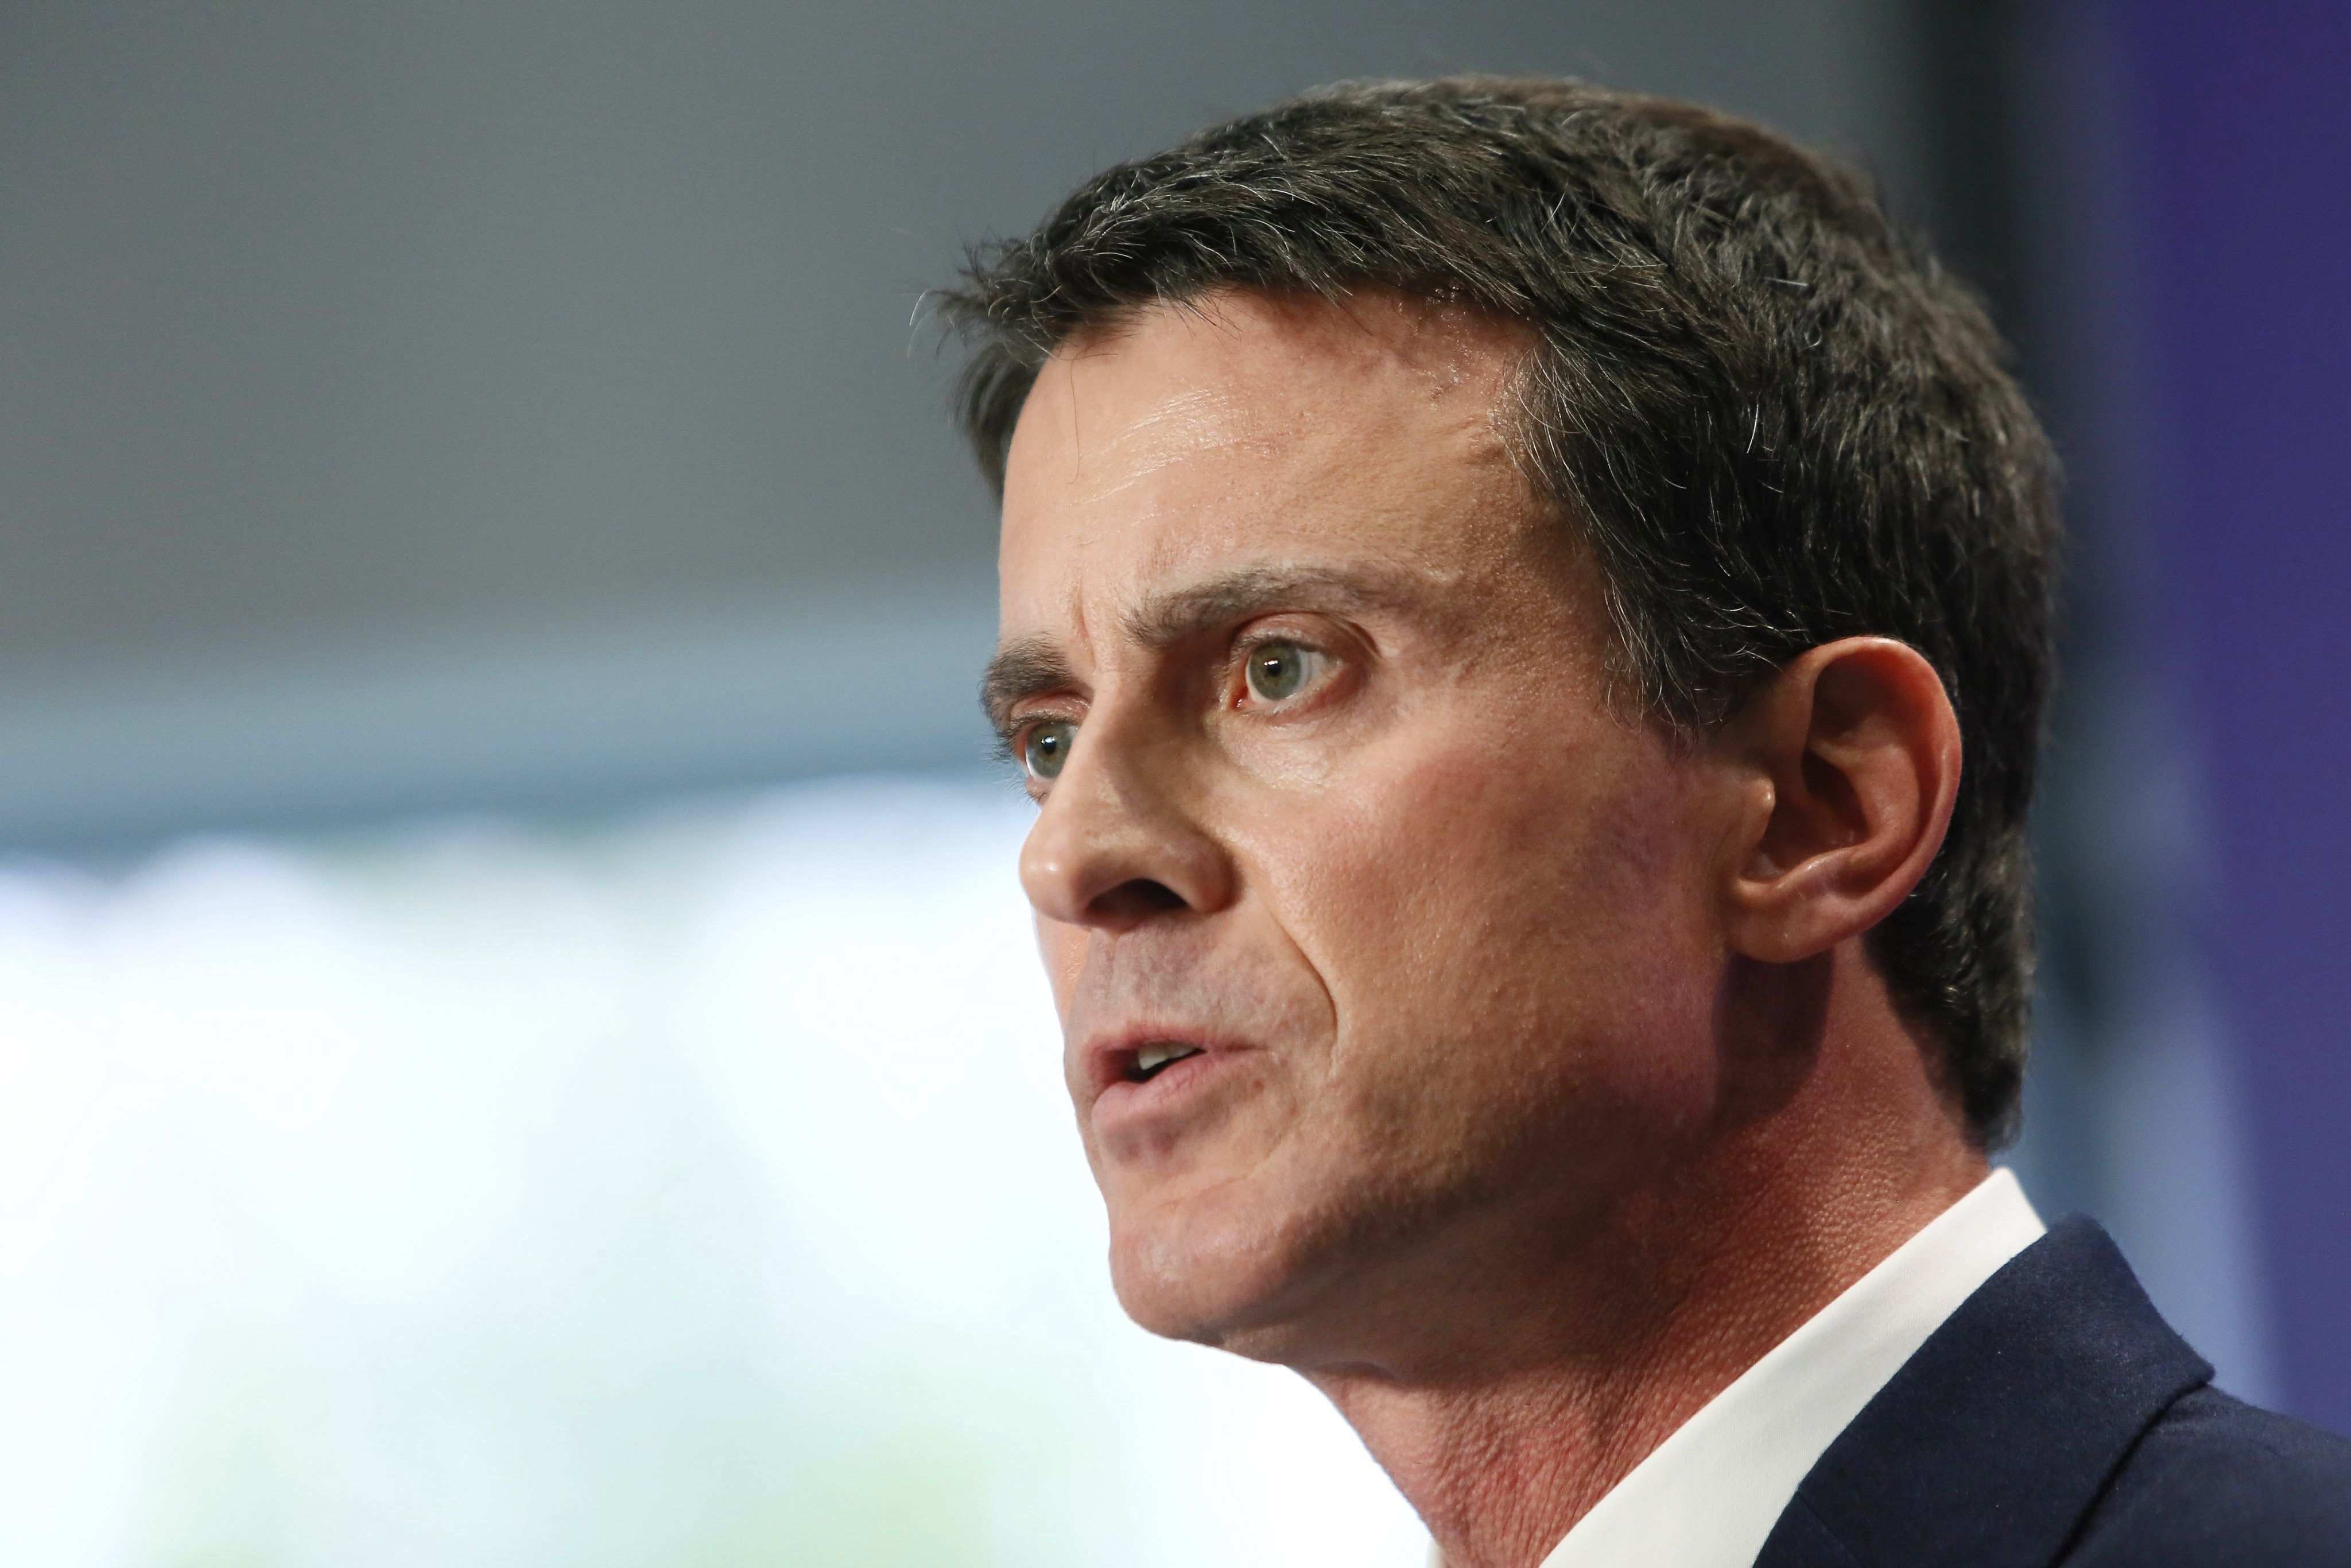 Manuel Valls presenta hoy su candidatura a las primarias socialistas